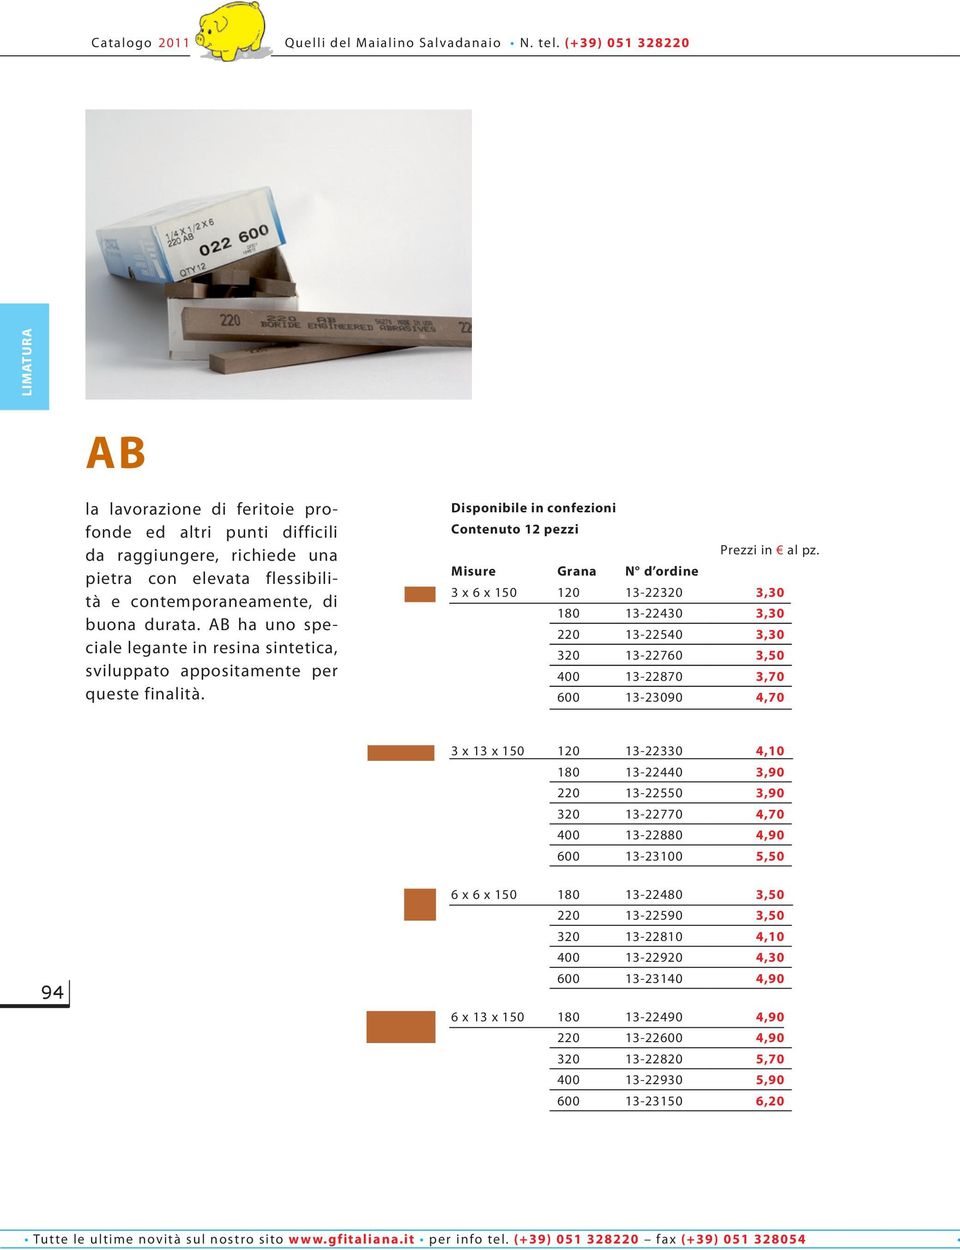 AB ha uno speciale legante in resina sintetica, sviluppato appositamente per queste finalità. Disponibile in confezioni Contenuto 12 pezzi Prezzi in al pz.